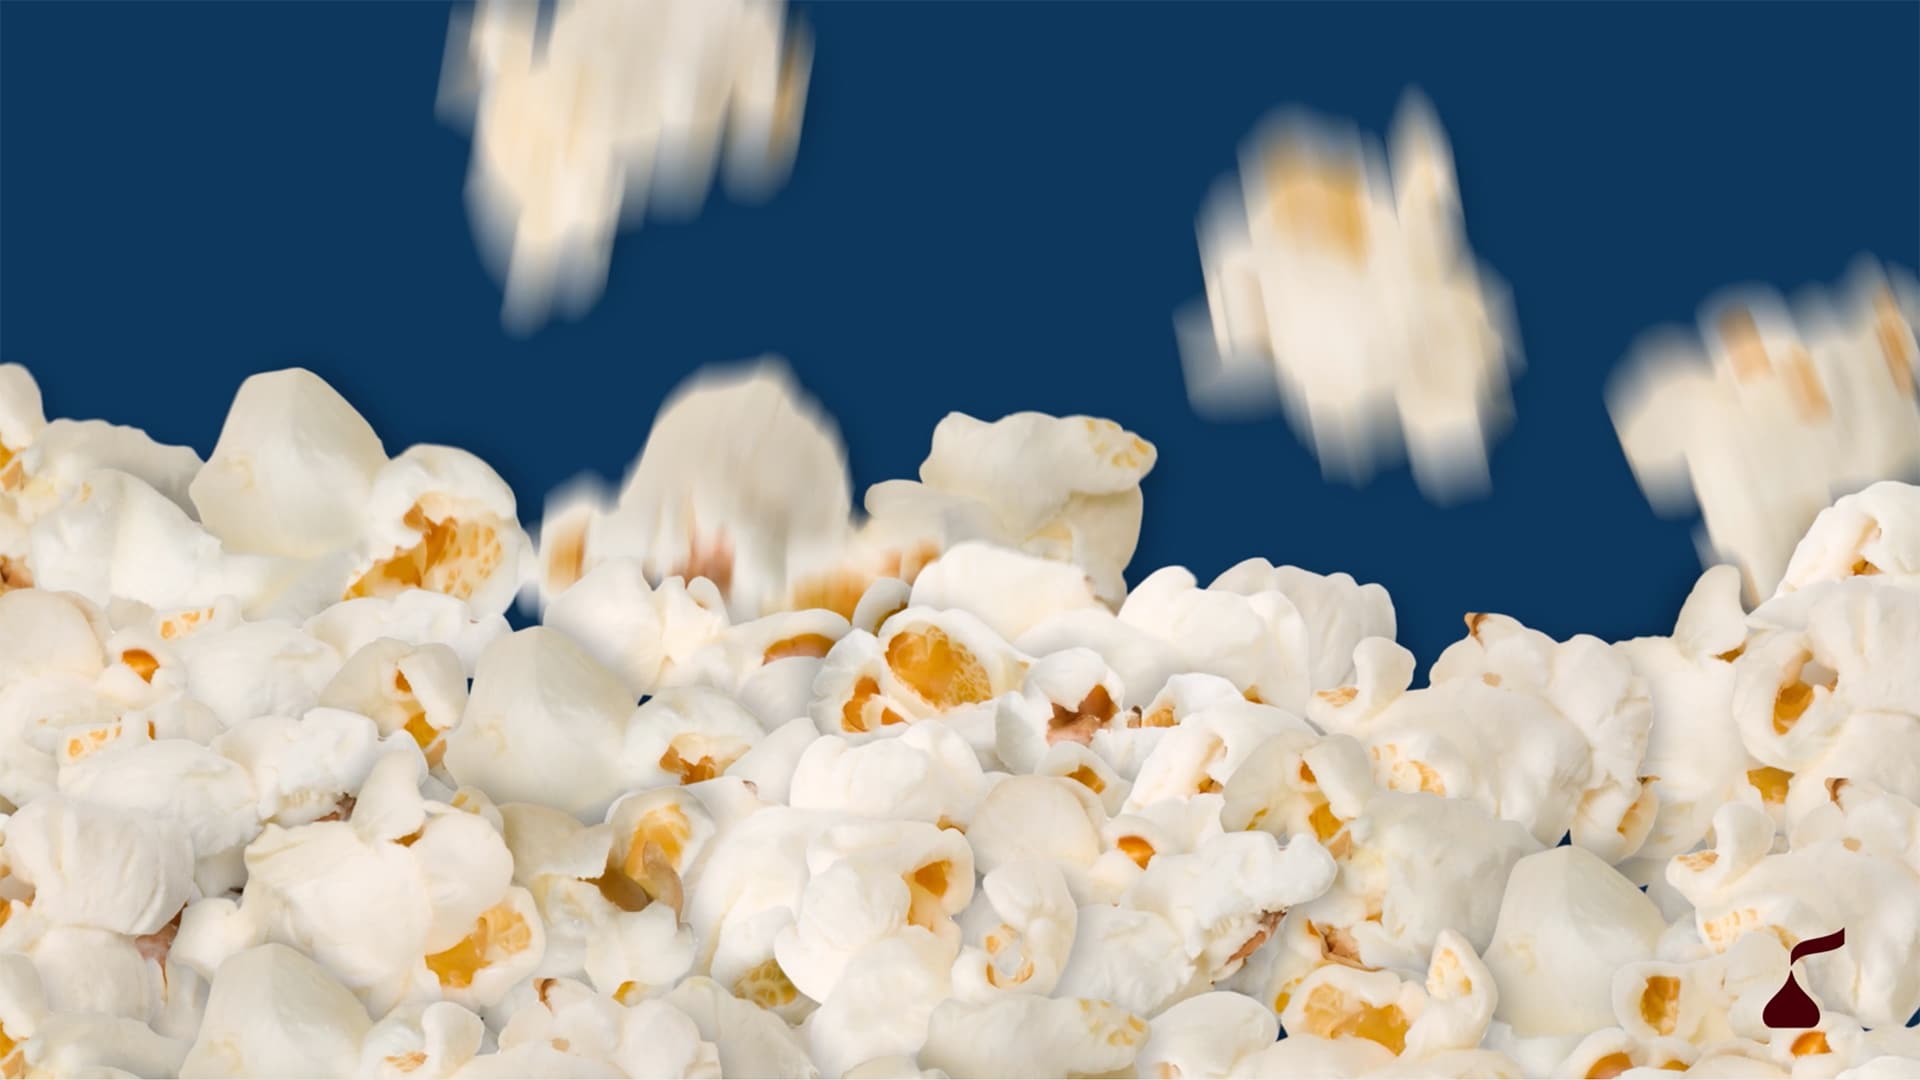 Popcorn bursting